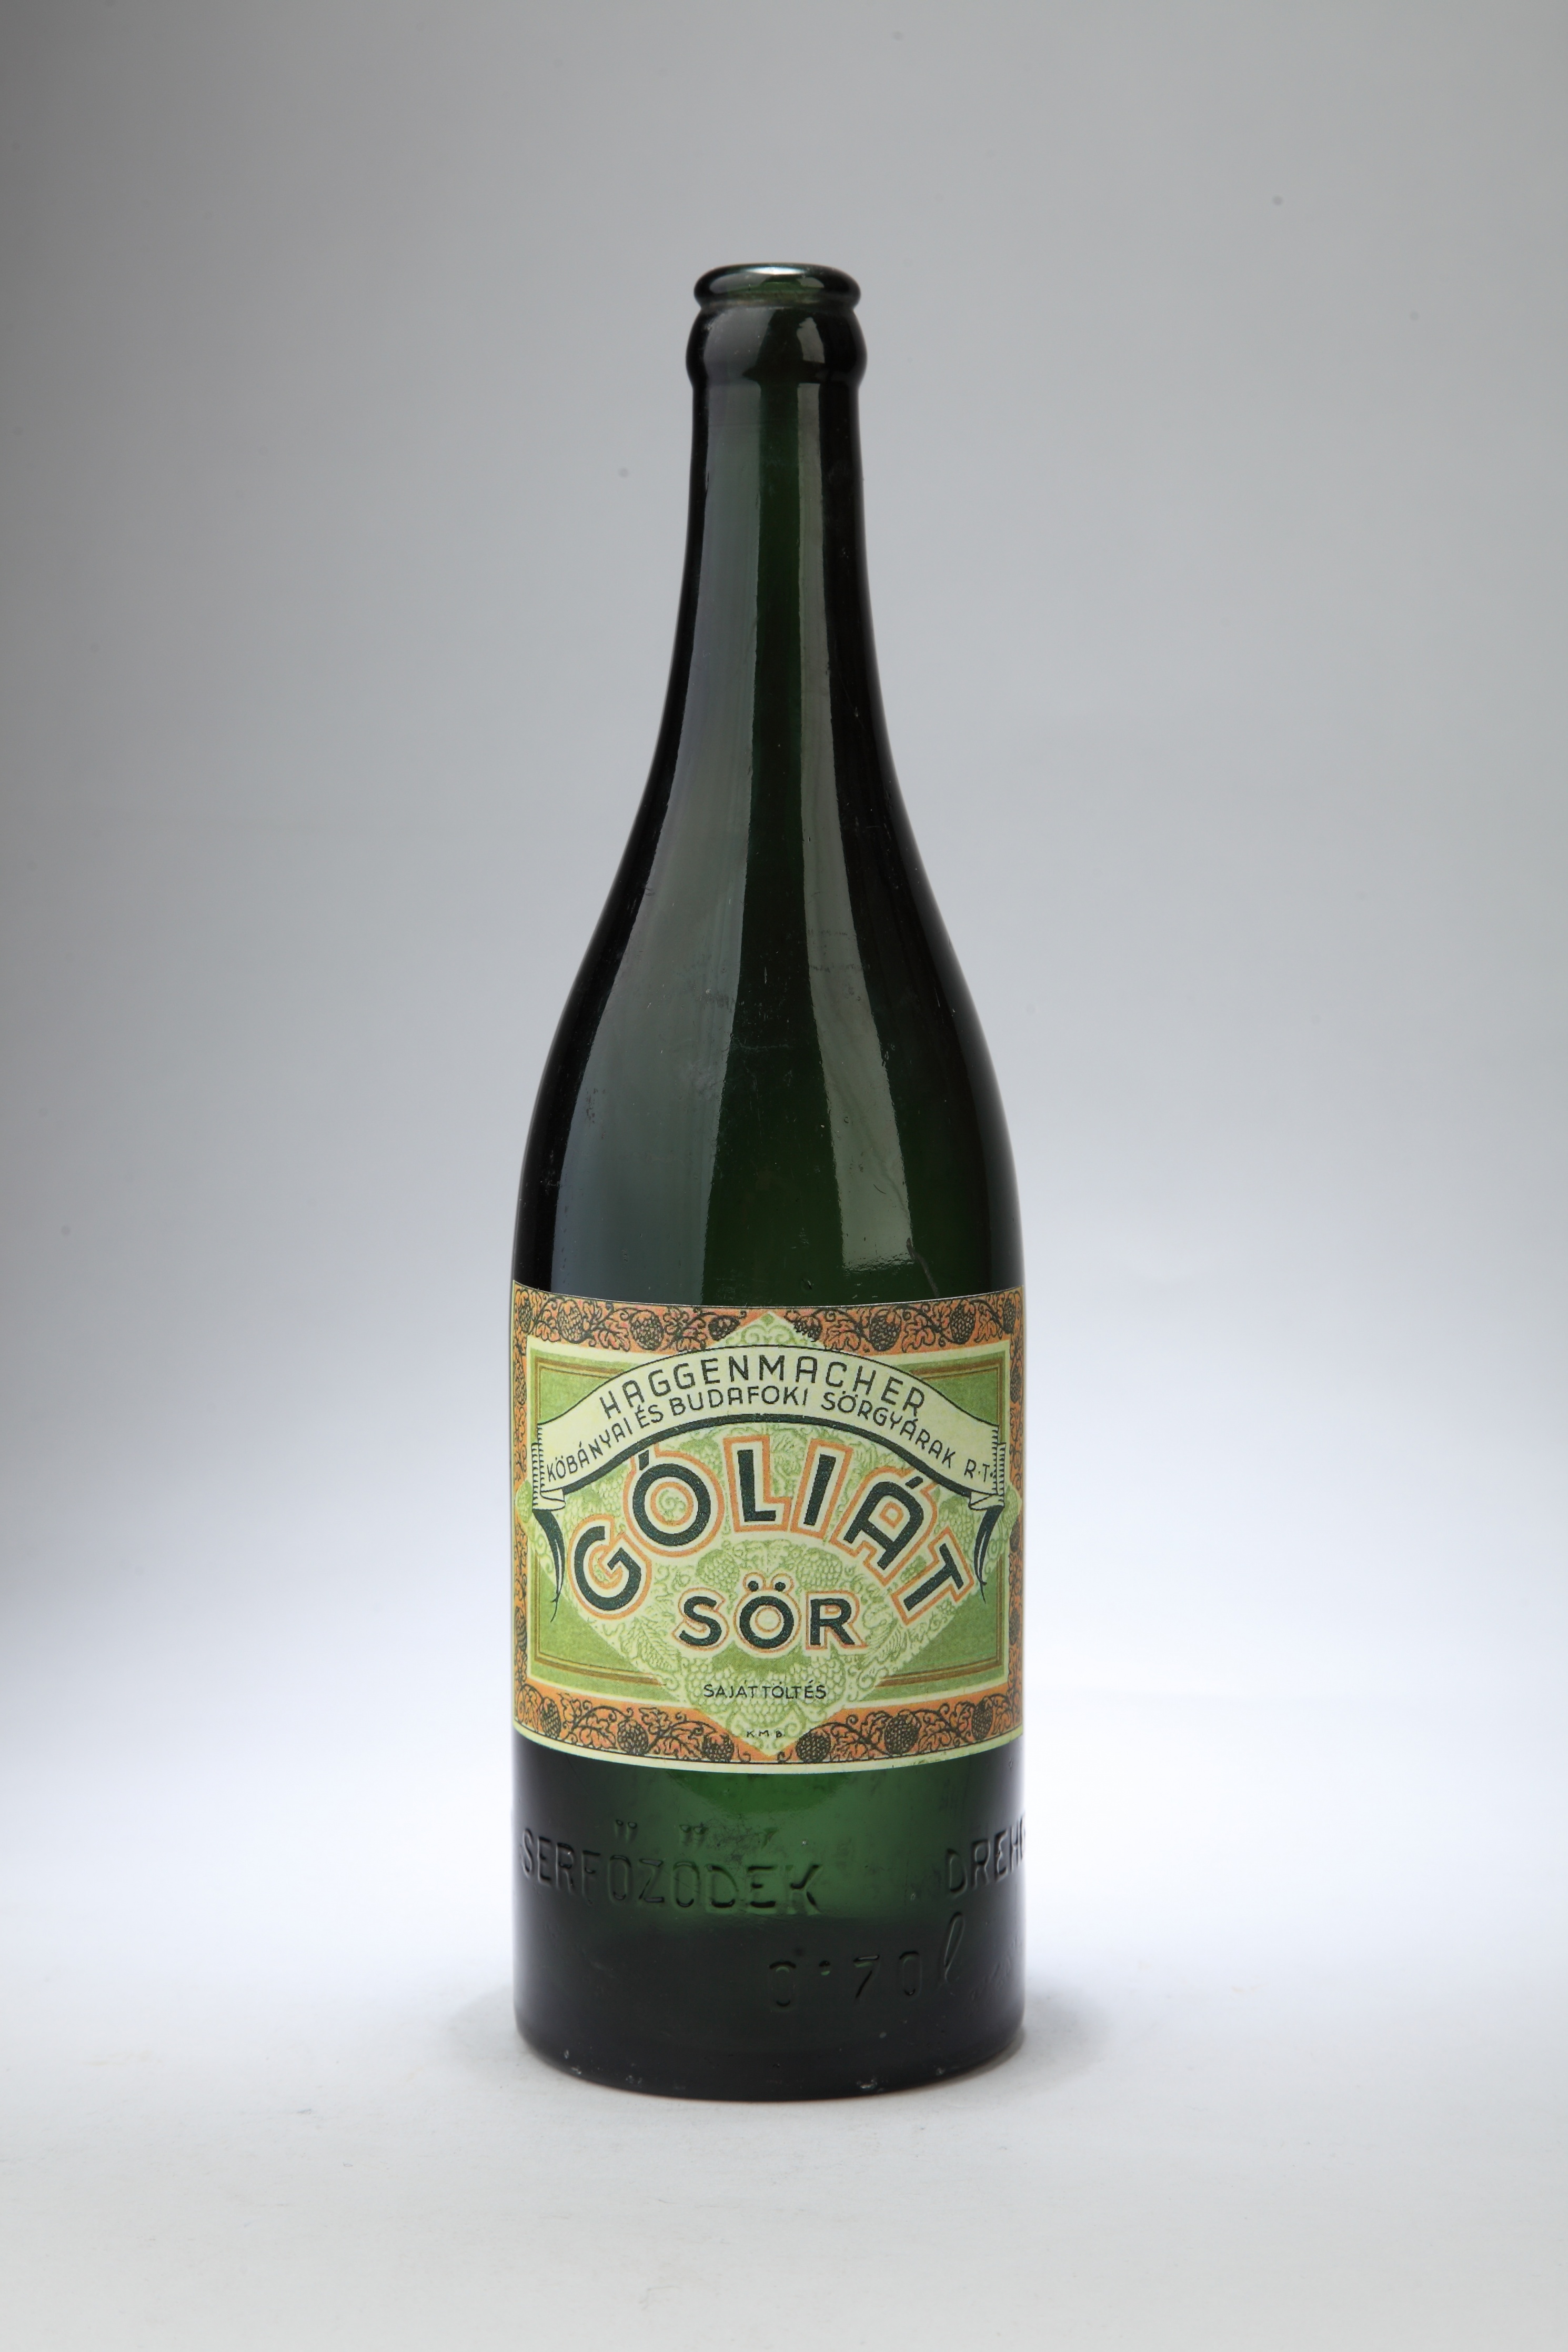 Haggenmacher Góliát sör üvege (Magyar Kereskedelmi és Vendéglátóipari Múzeum CC BY-NC-SA)